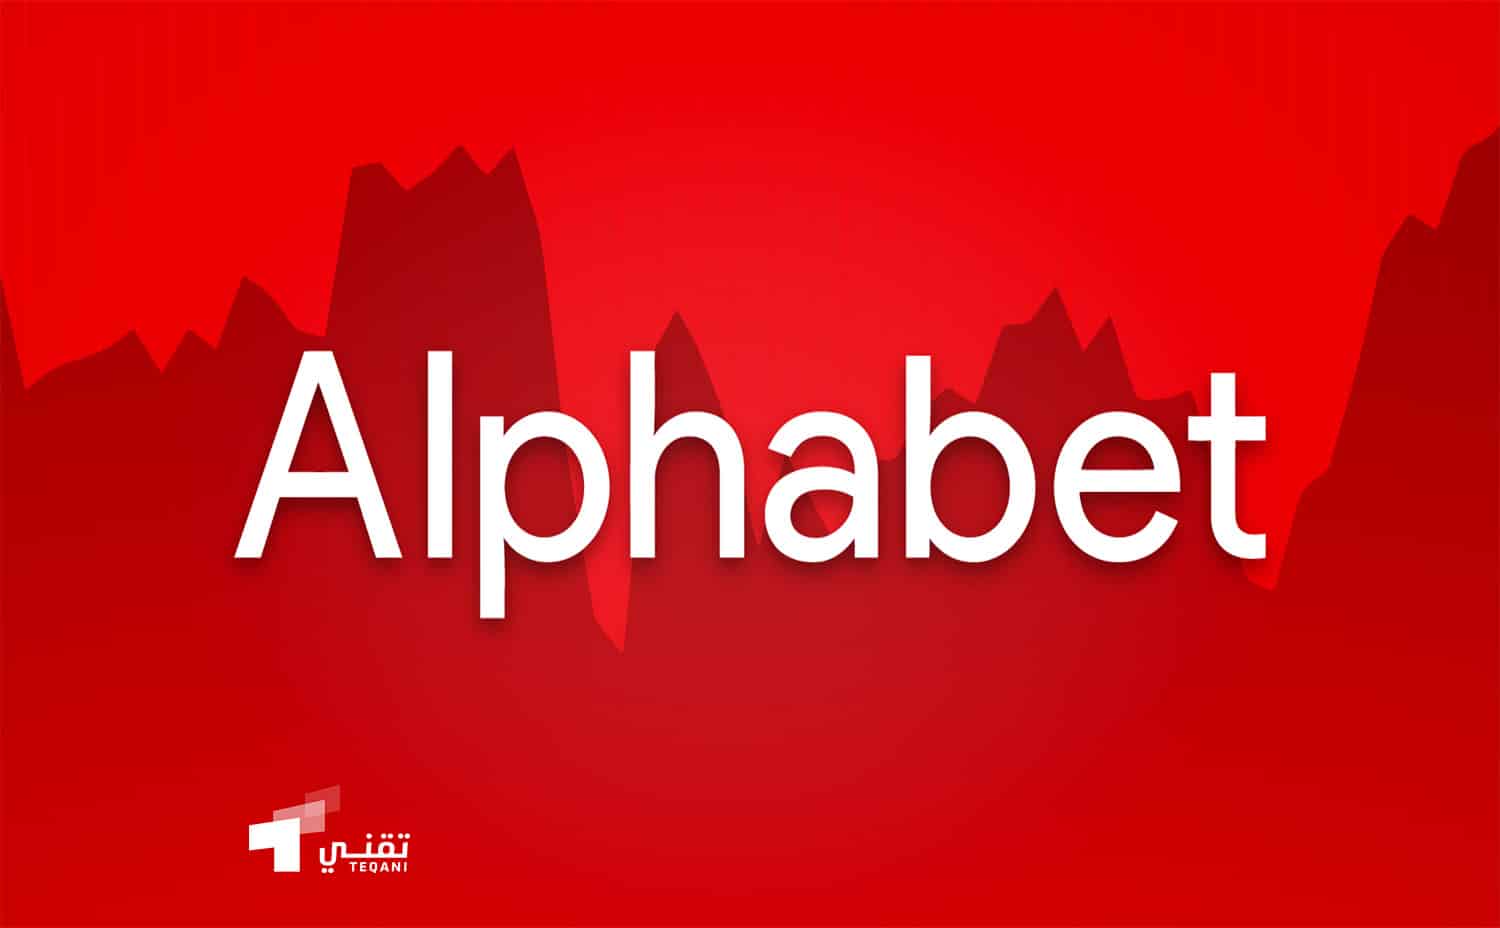 شركة Alphabet تصل إلى 2 تريليون دولار